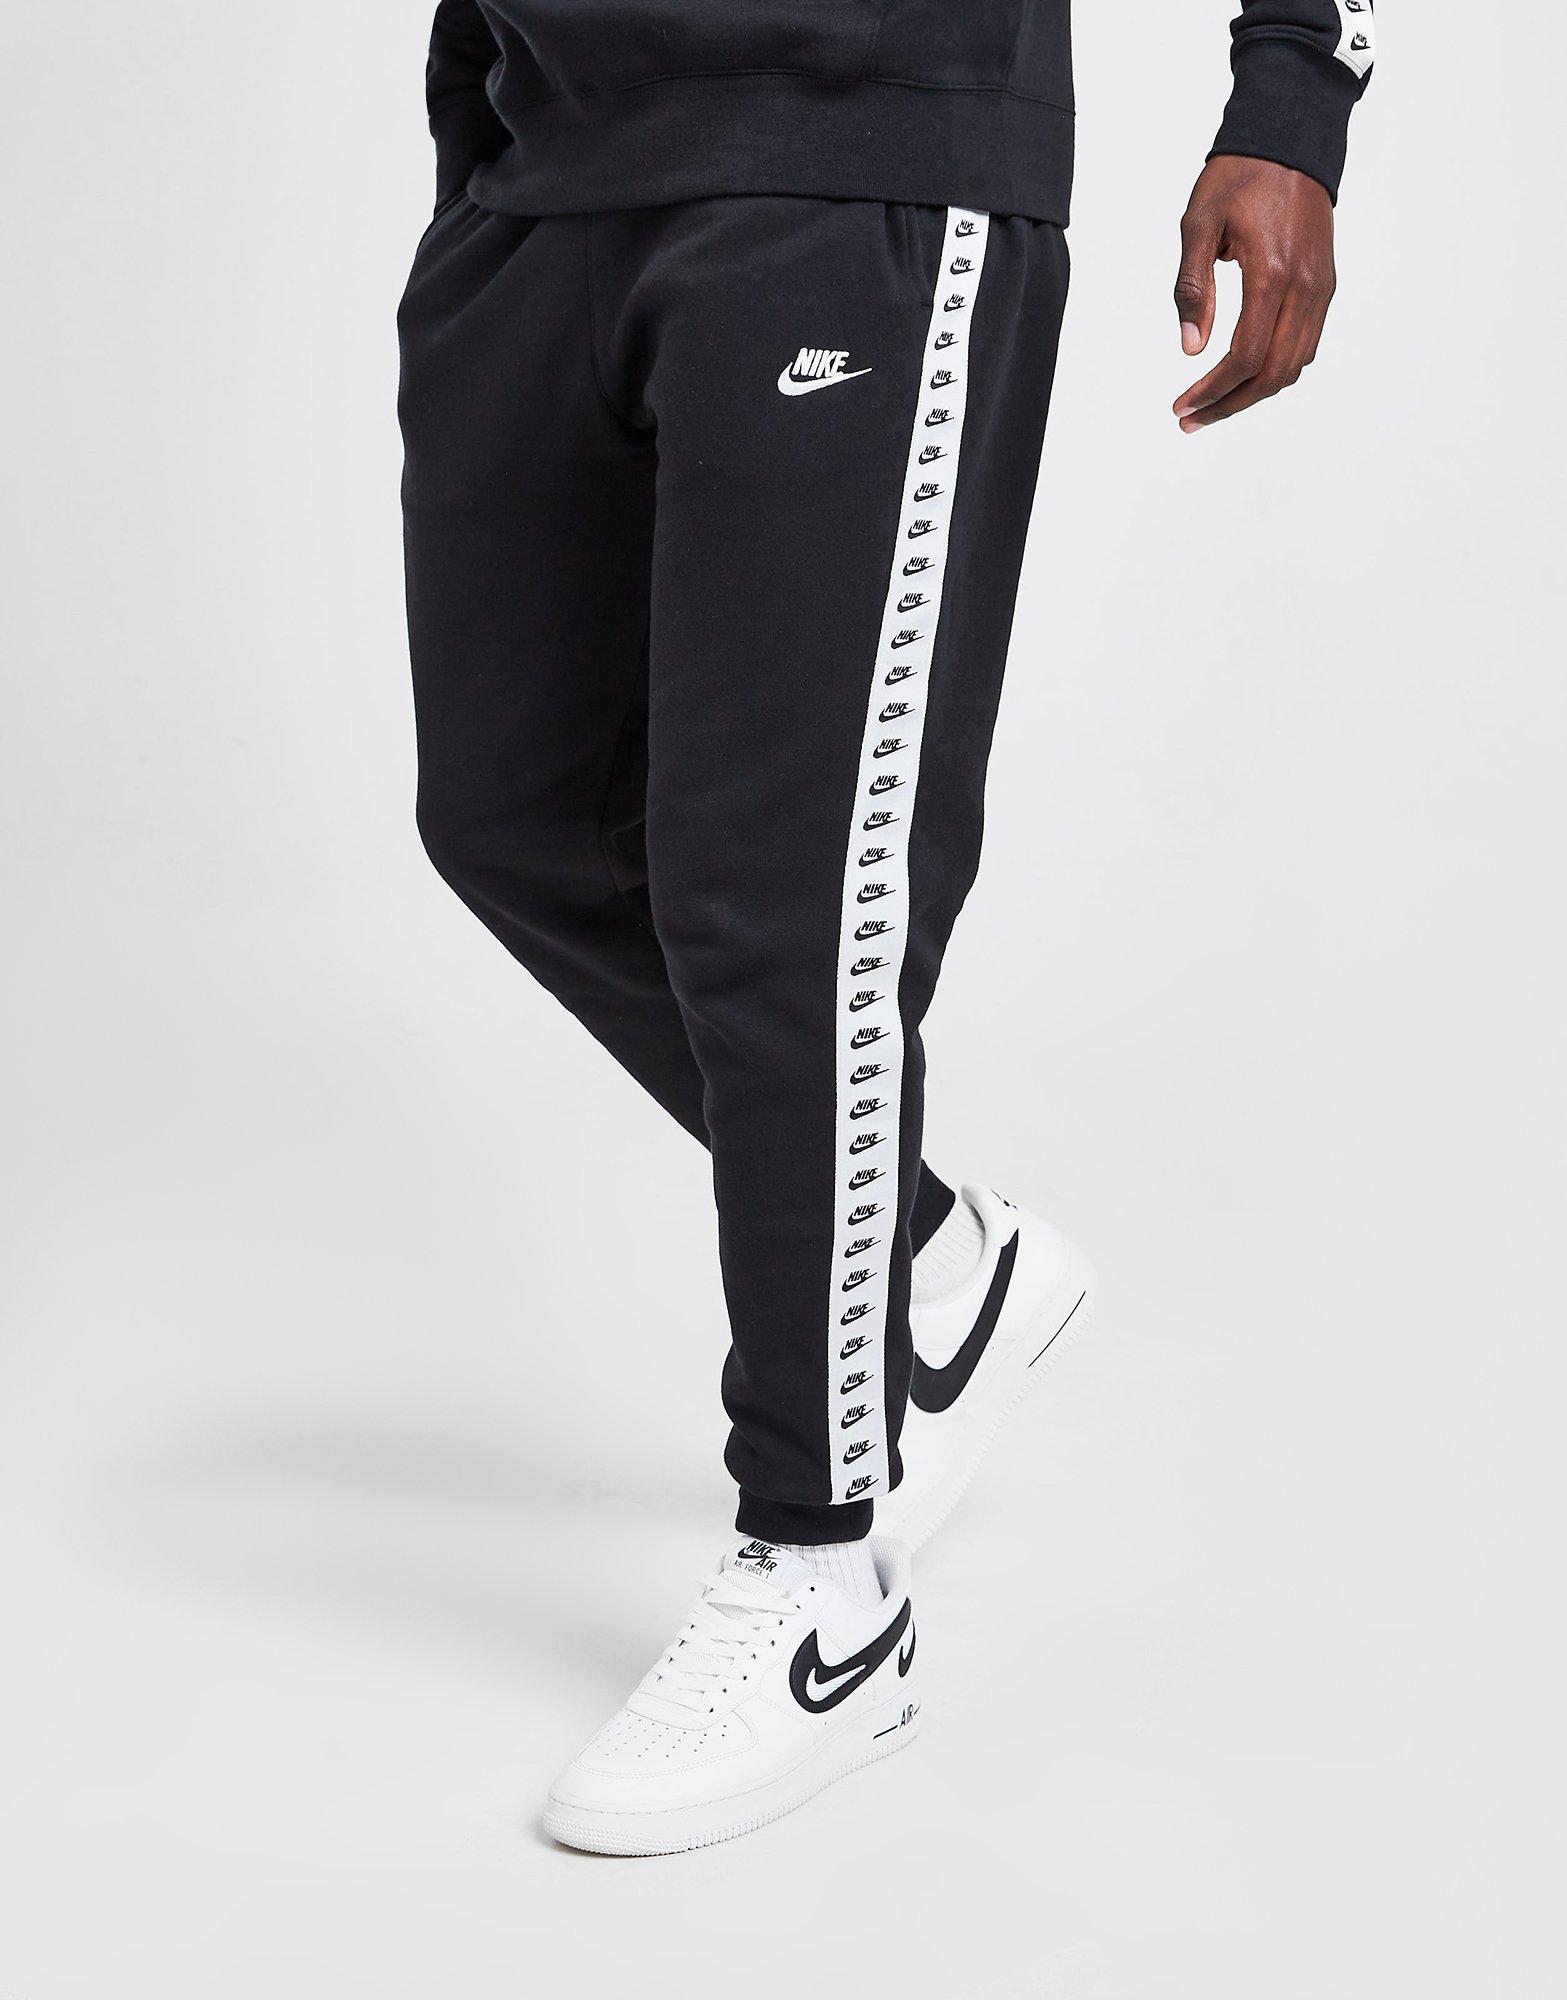 Pantalón de chándal Nike Zeus Tape hombre JD Sports España